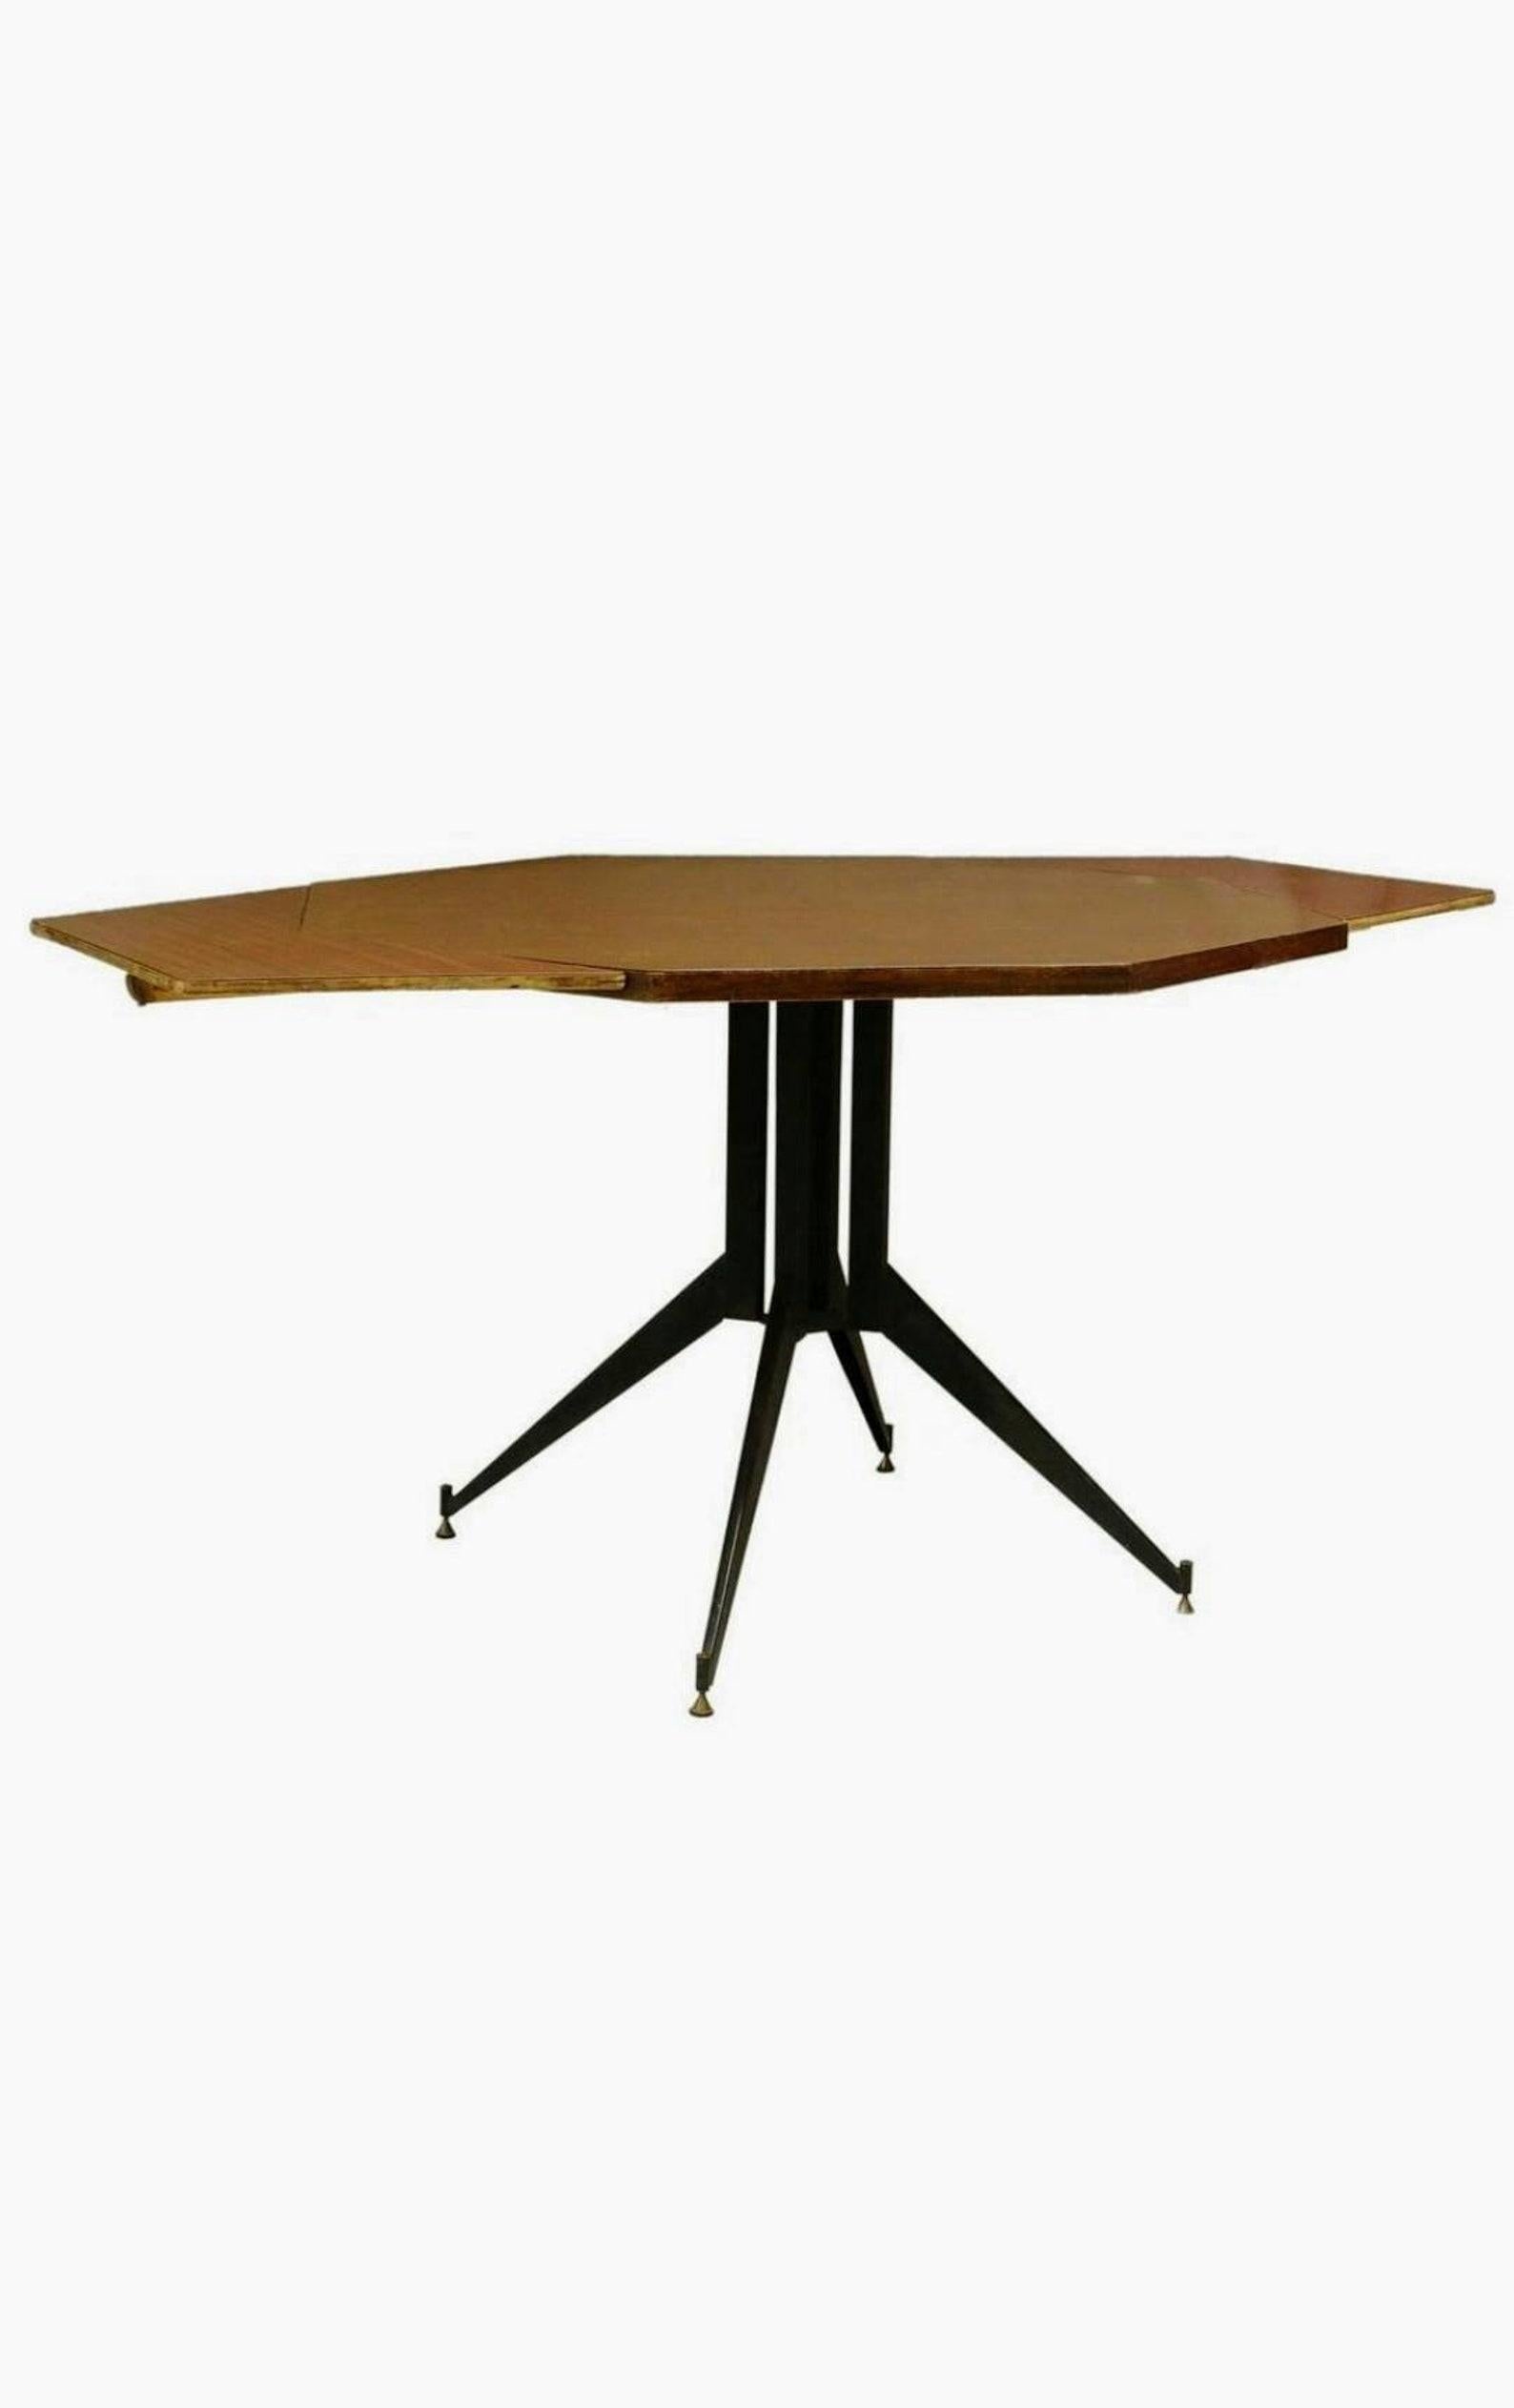 Table de salle à manger / table centrale de style moderne du milieu du siècle, Italie, vers les années 1960, avec un plateau octogonal en stratifié, reposant sur un piédestal en fer, accompagné d'une paire de feuilles angulaires. Attribué au